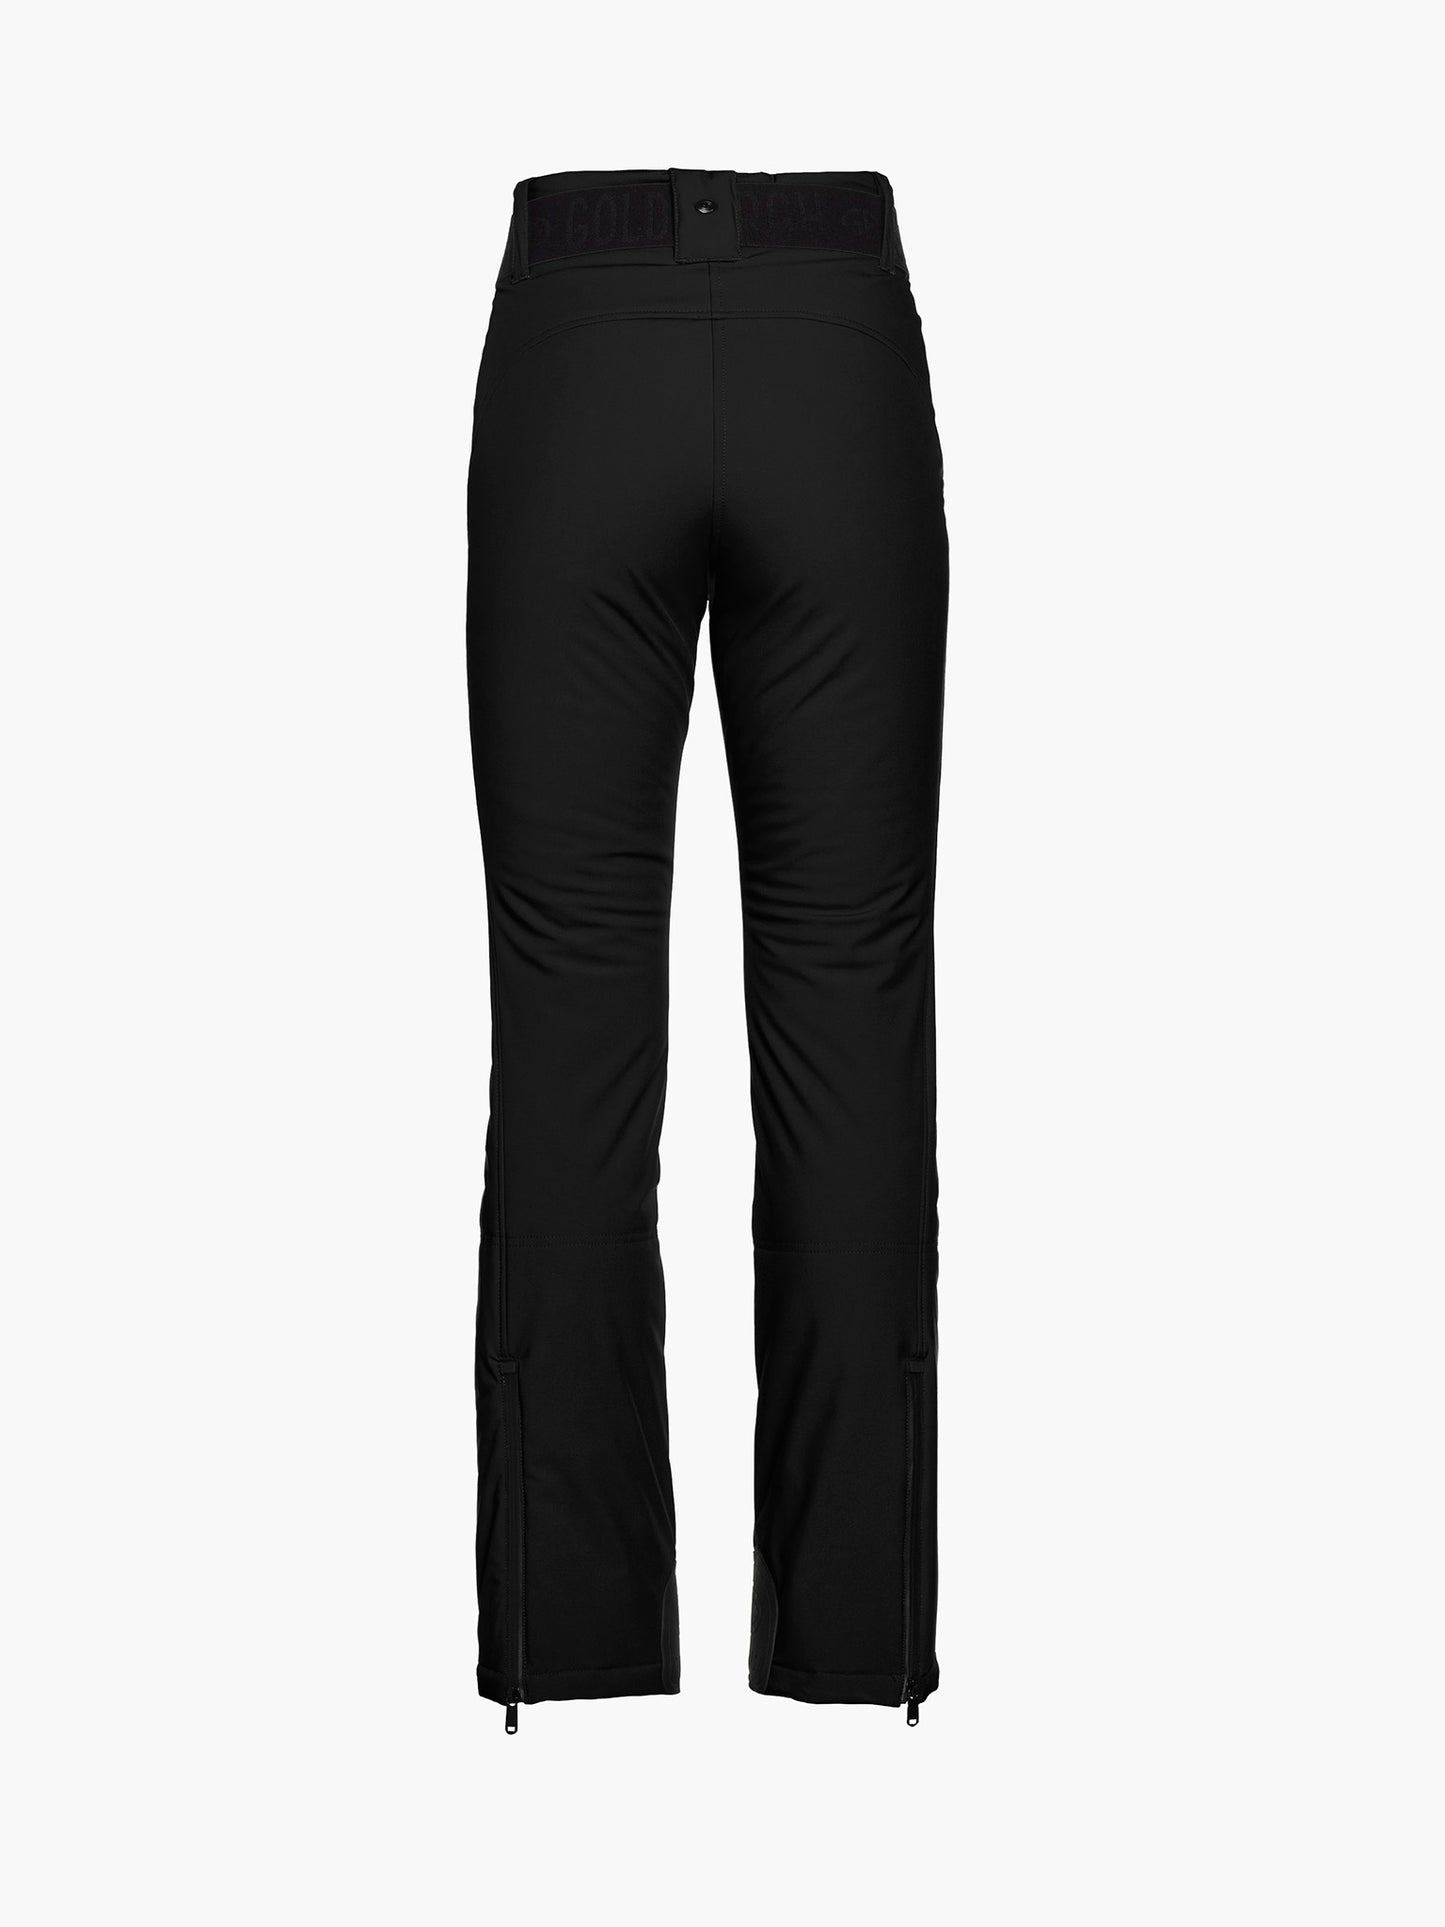 BERGEN - Black - Women's Trousers for Winter Outdoor Activities